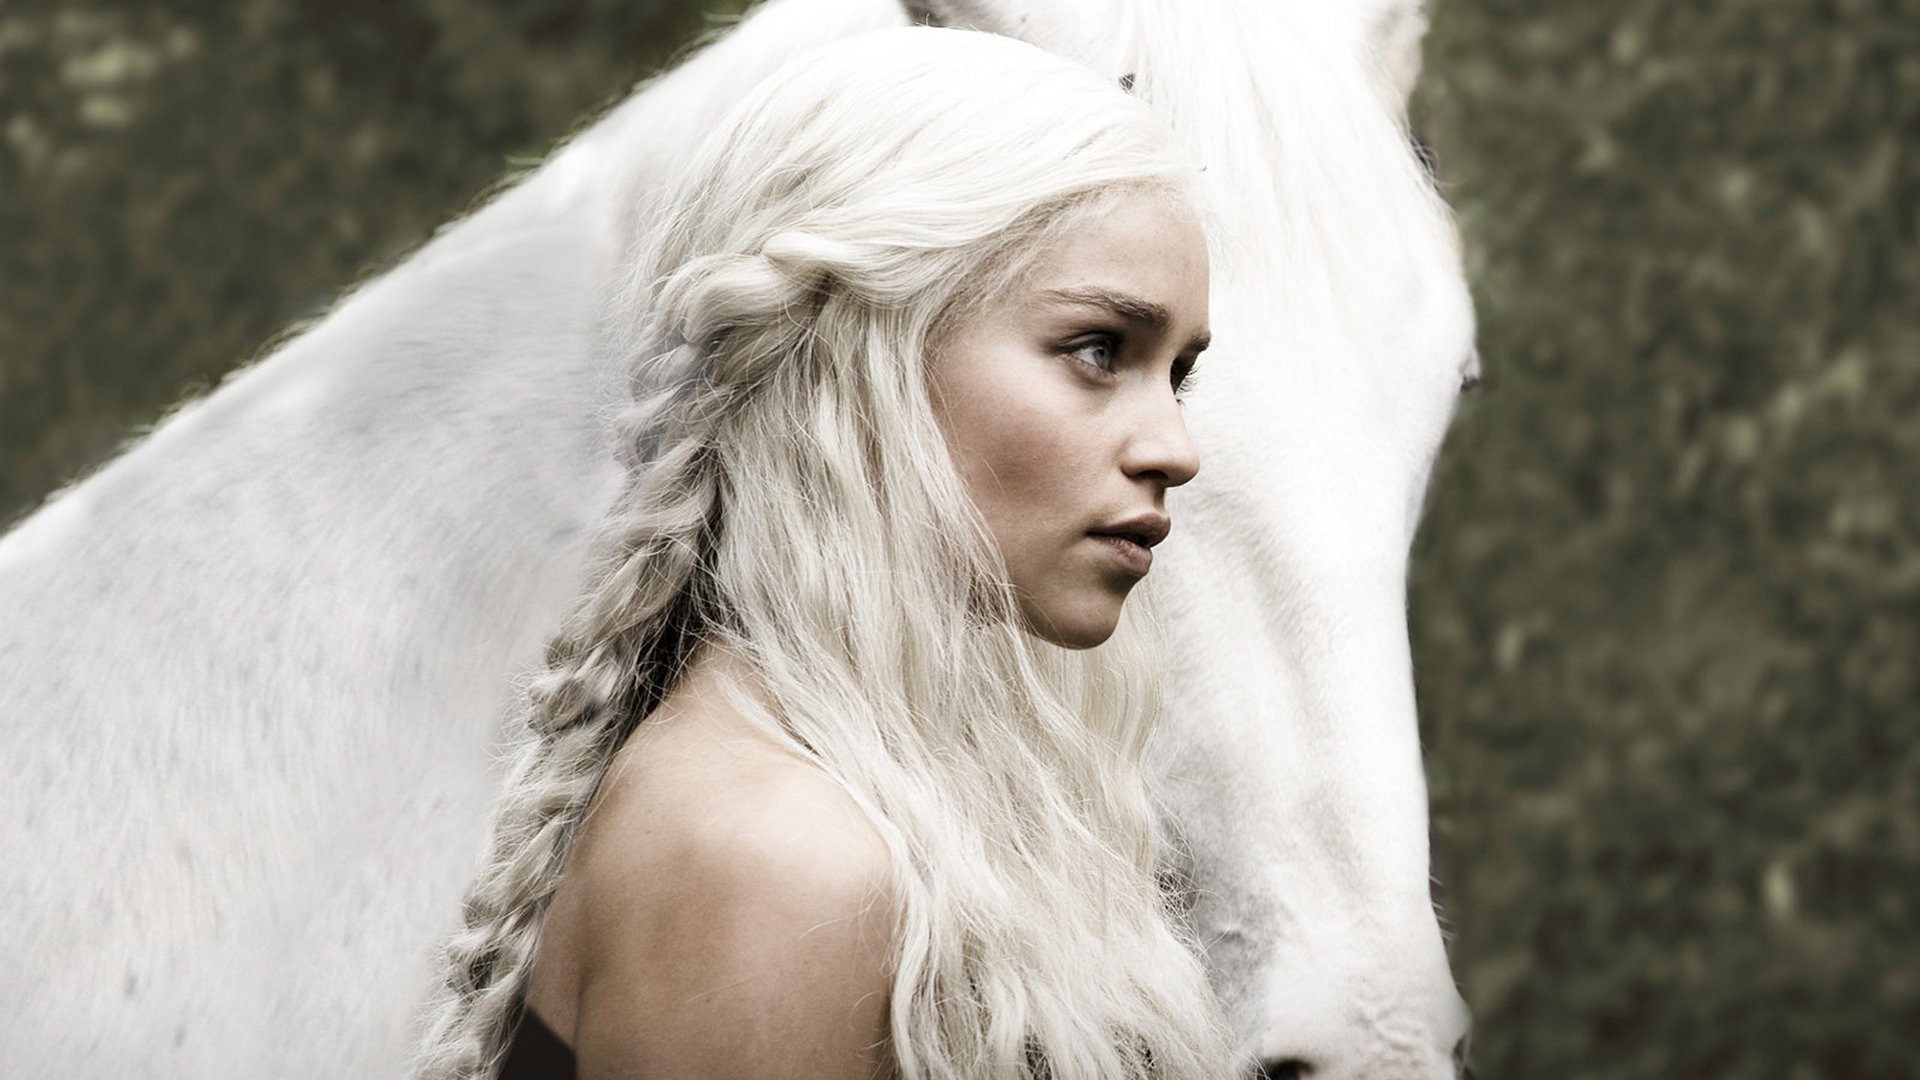 игра престолов daenerys targaryen кхалиси эмилия кларк девушка лошадь волосы актриса